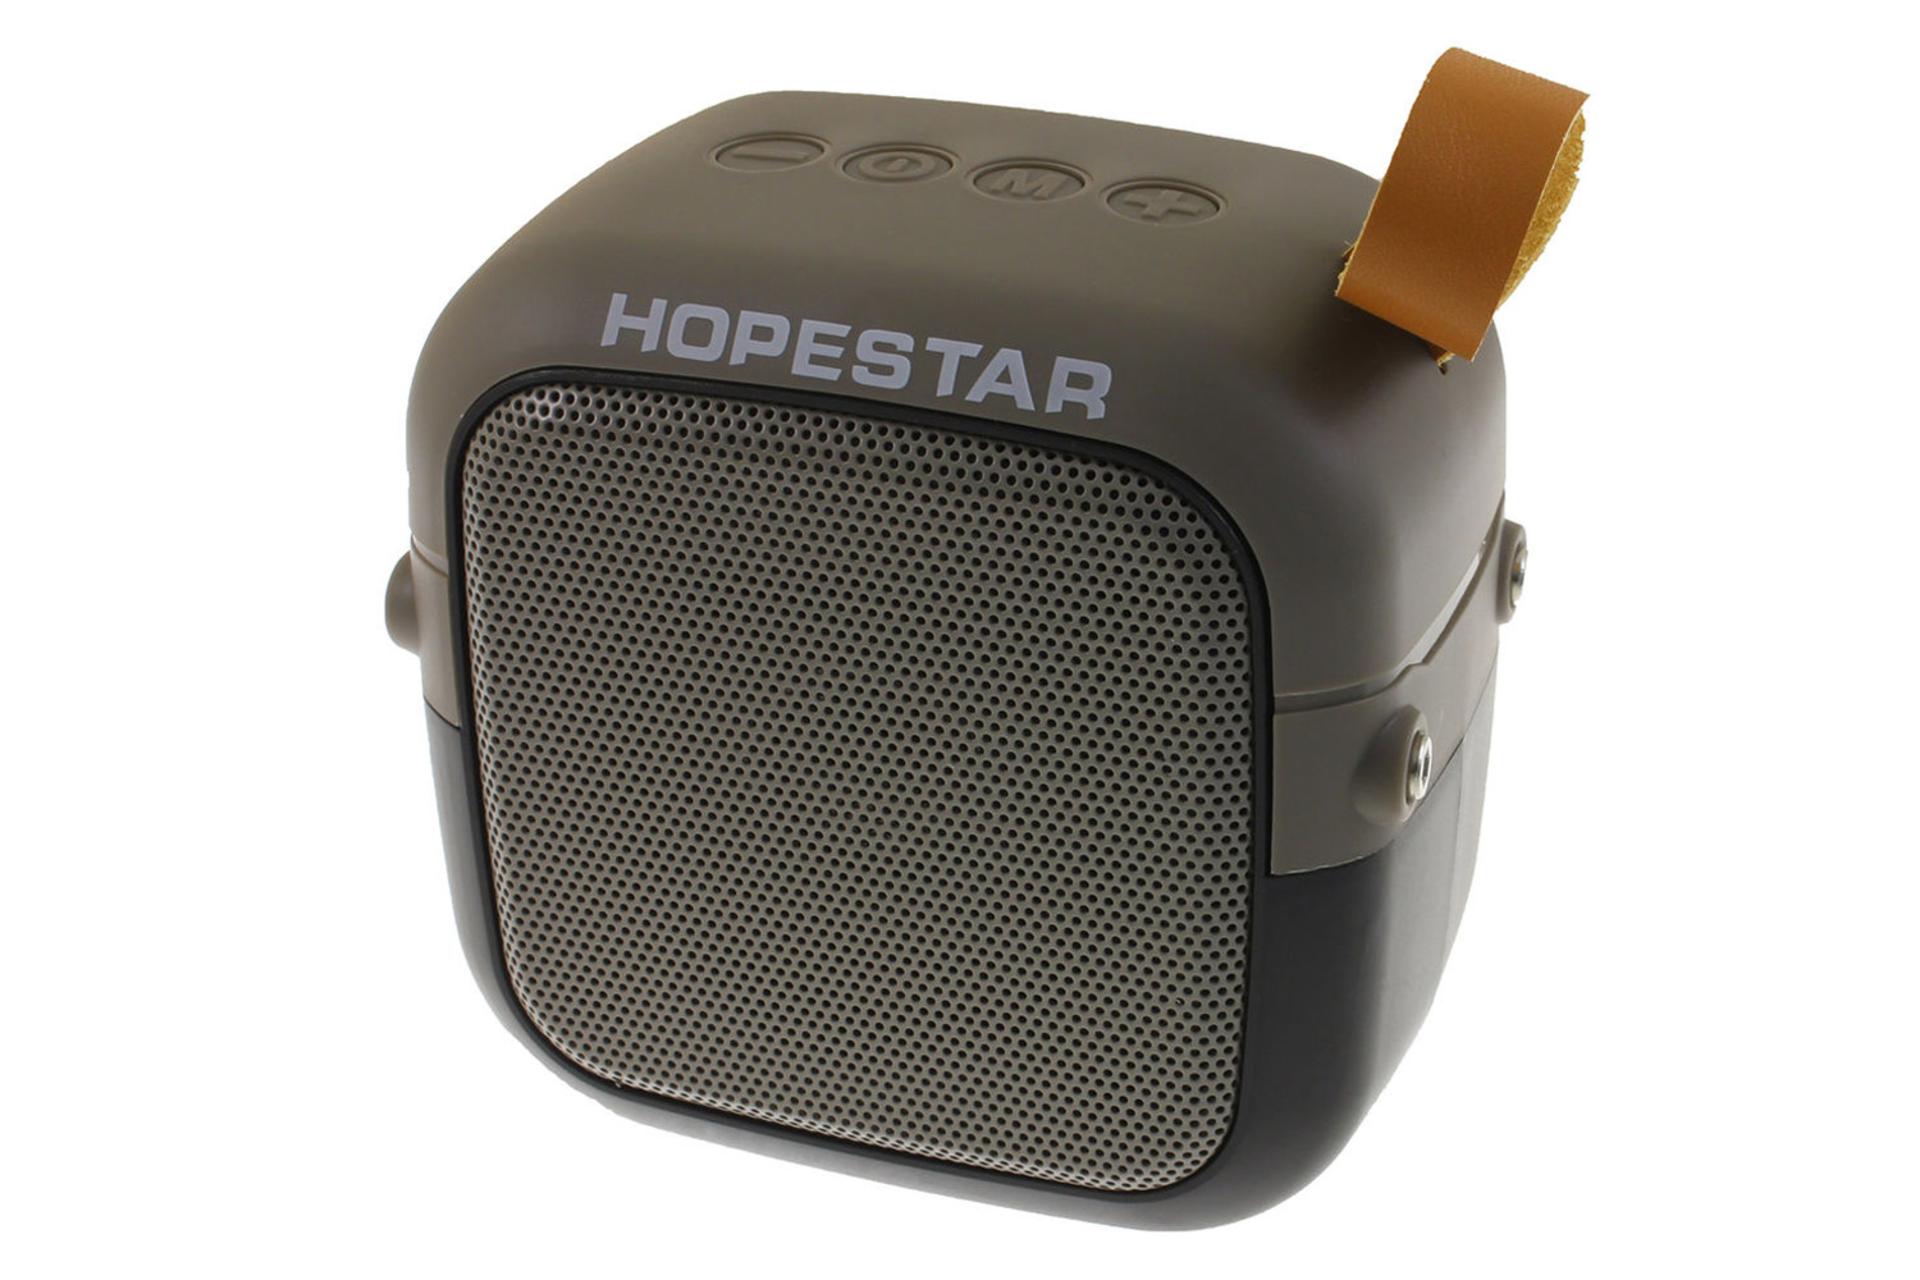 ابعاد اسپیکر هوپ استار Hopestar T5 Mini